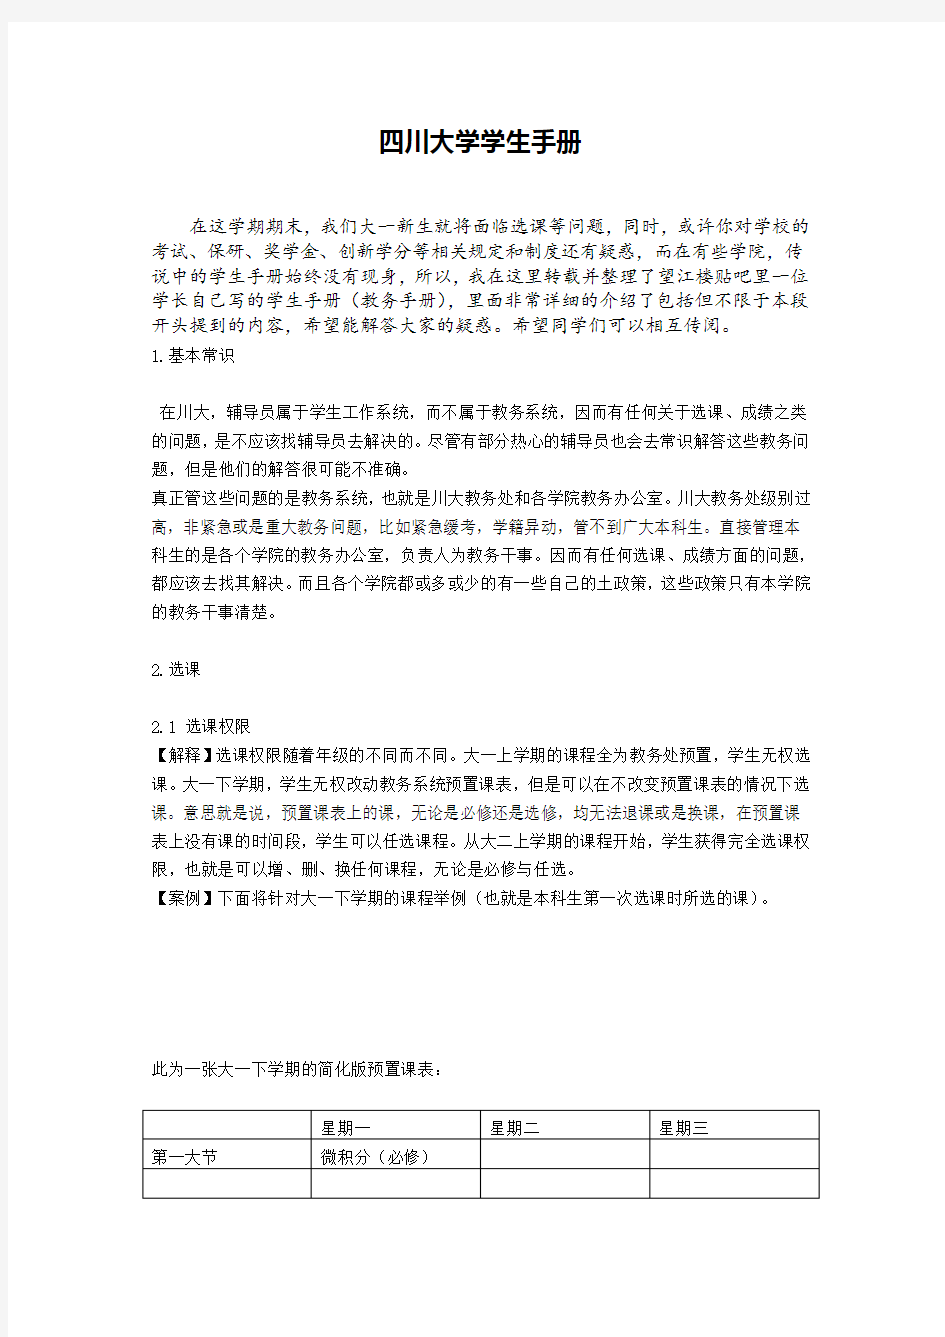 四川大学学生手册分析